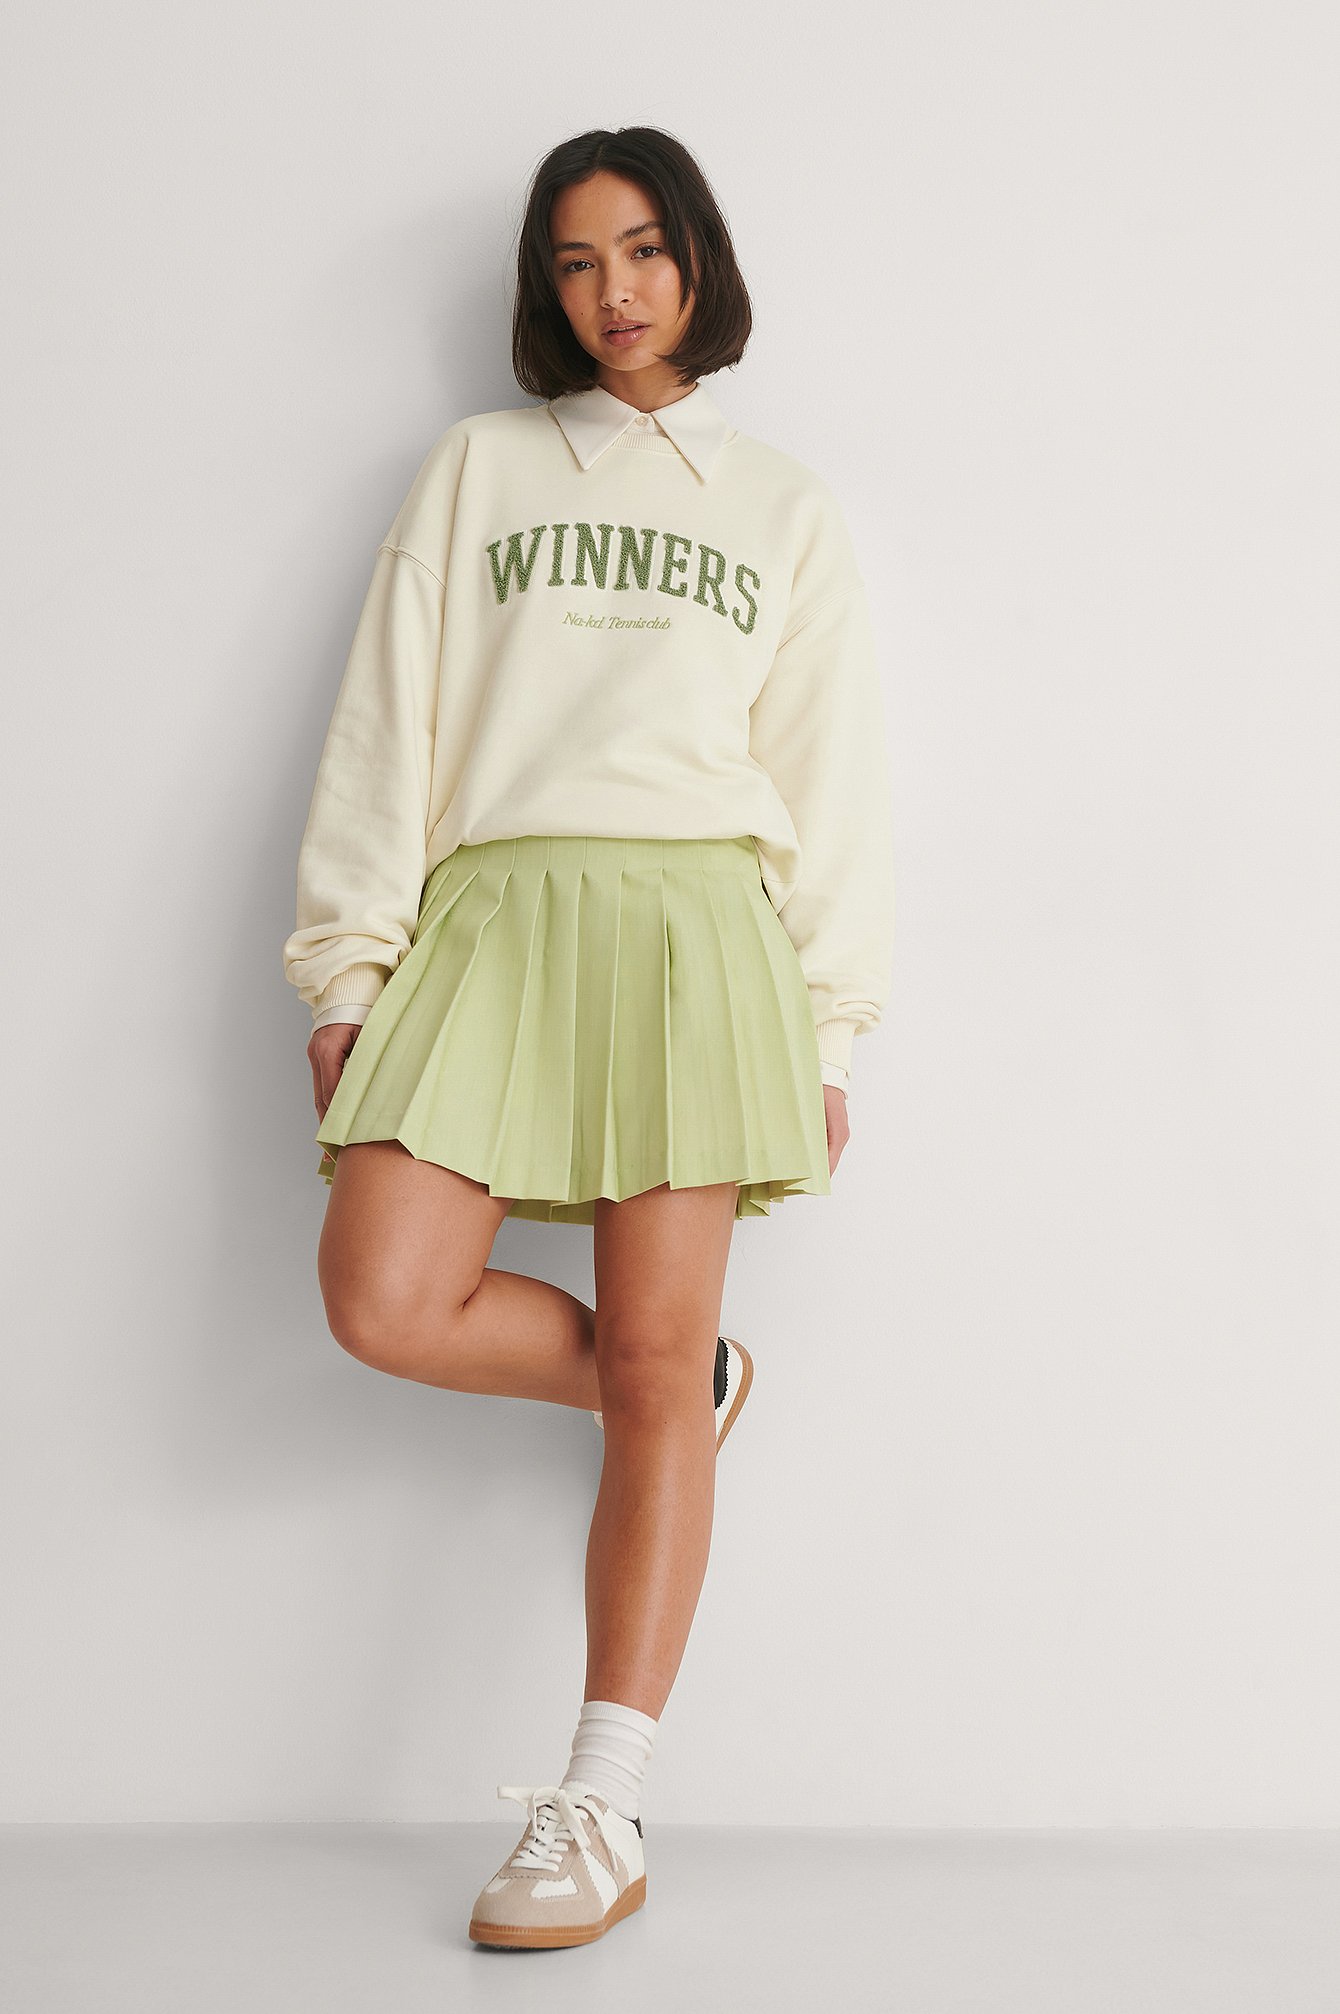 Green Tennis Skirt